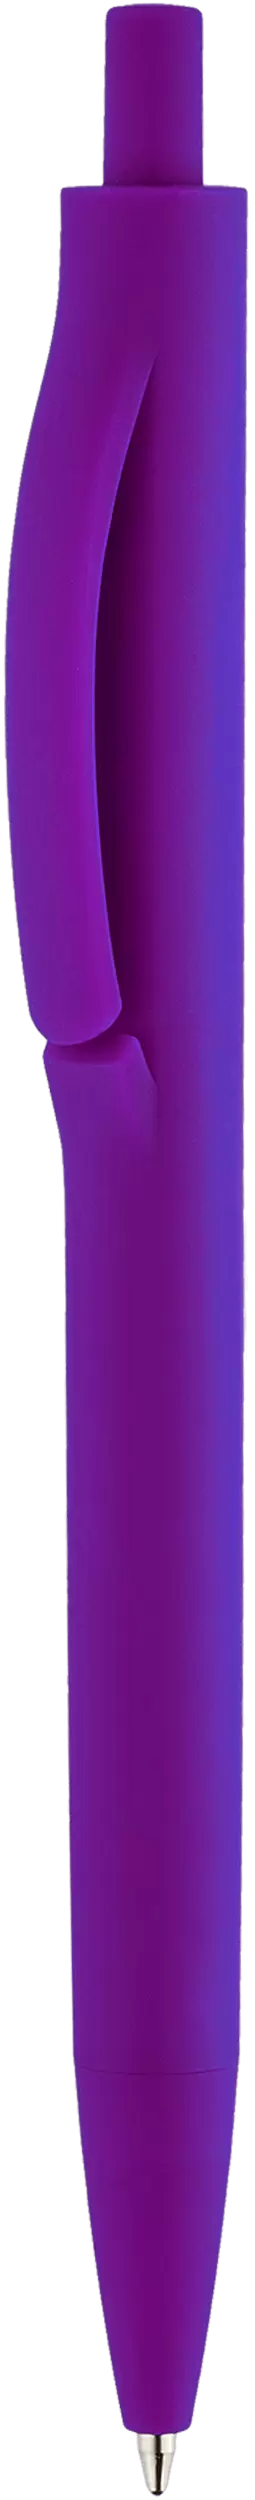 Ручка IGLA SOFT Фиолетовая 1030.11